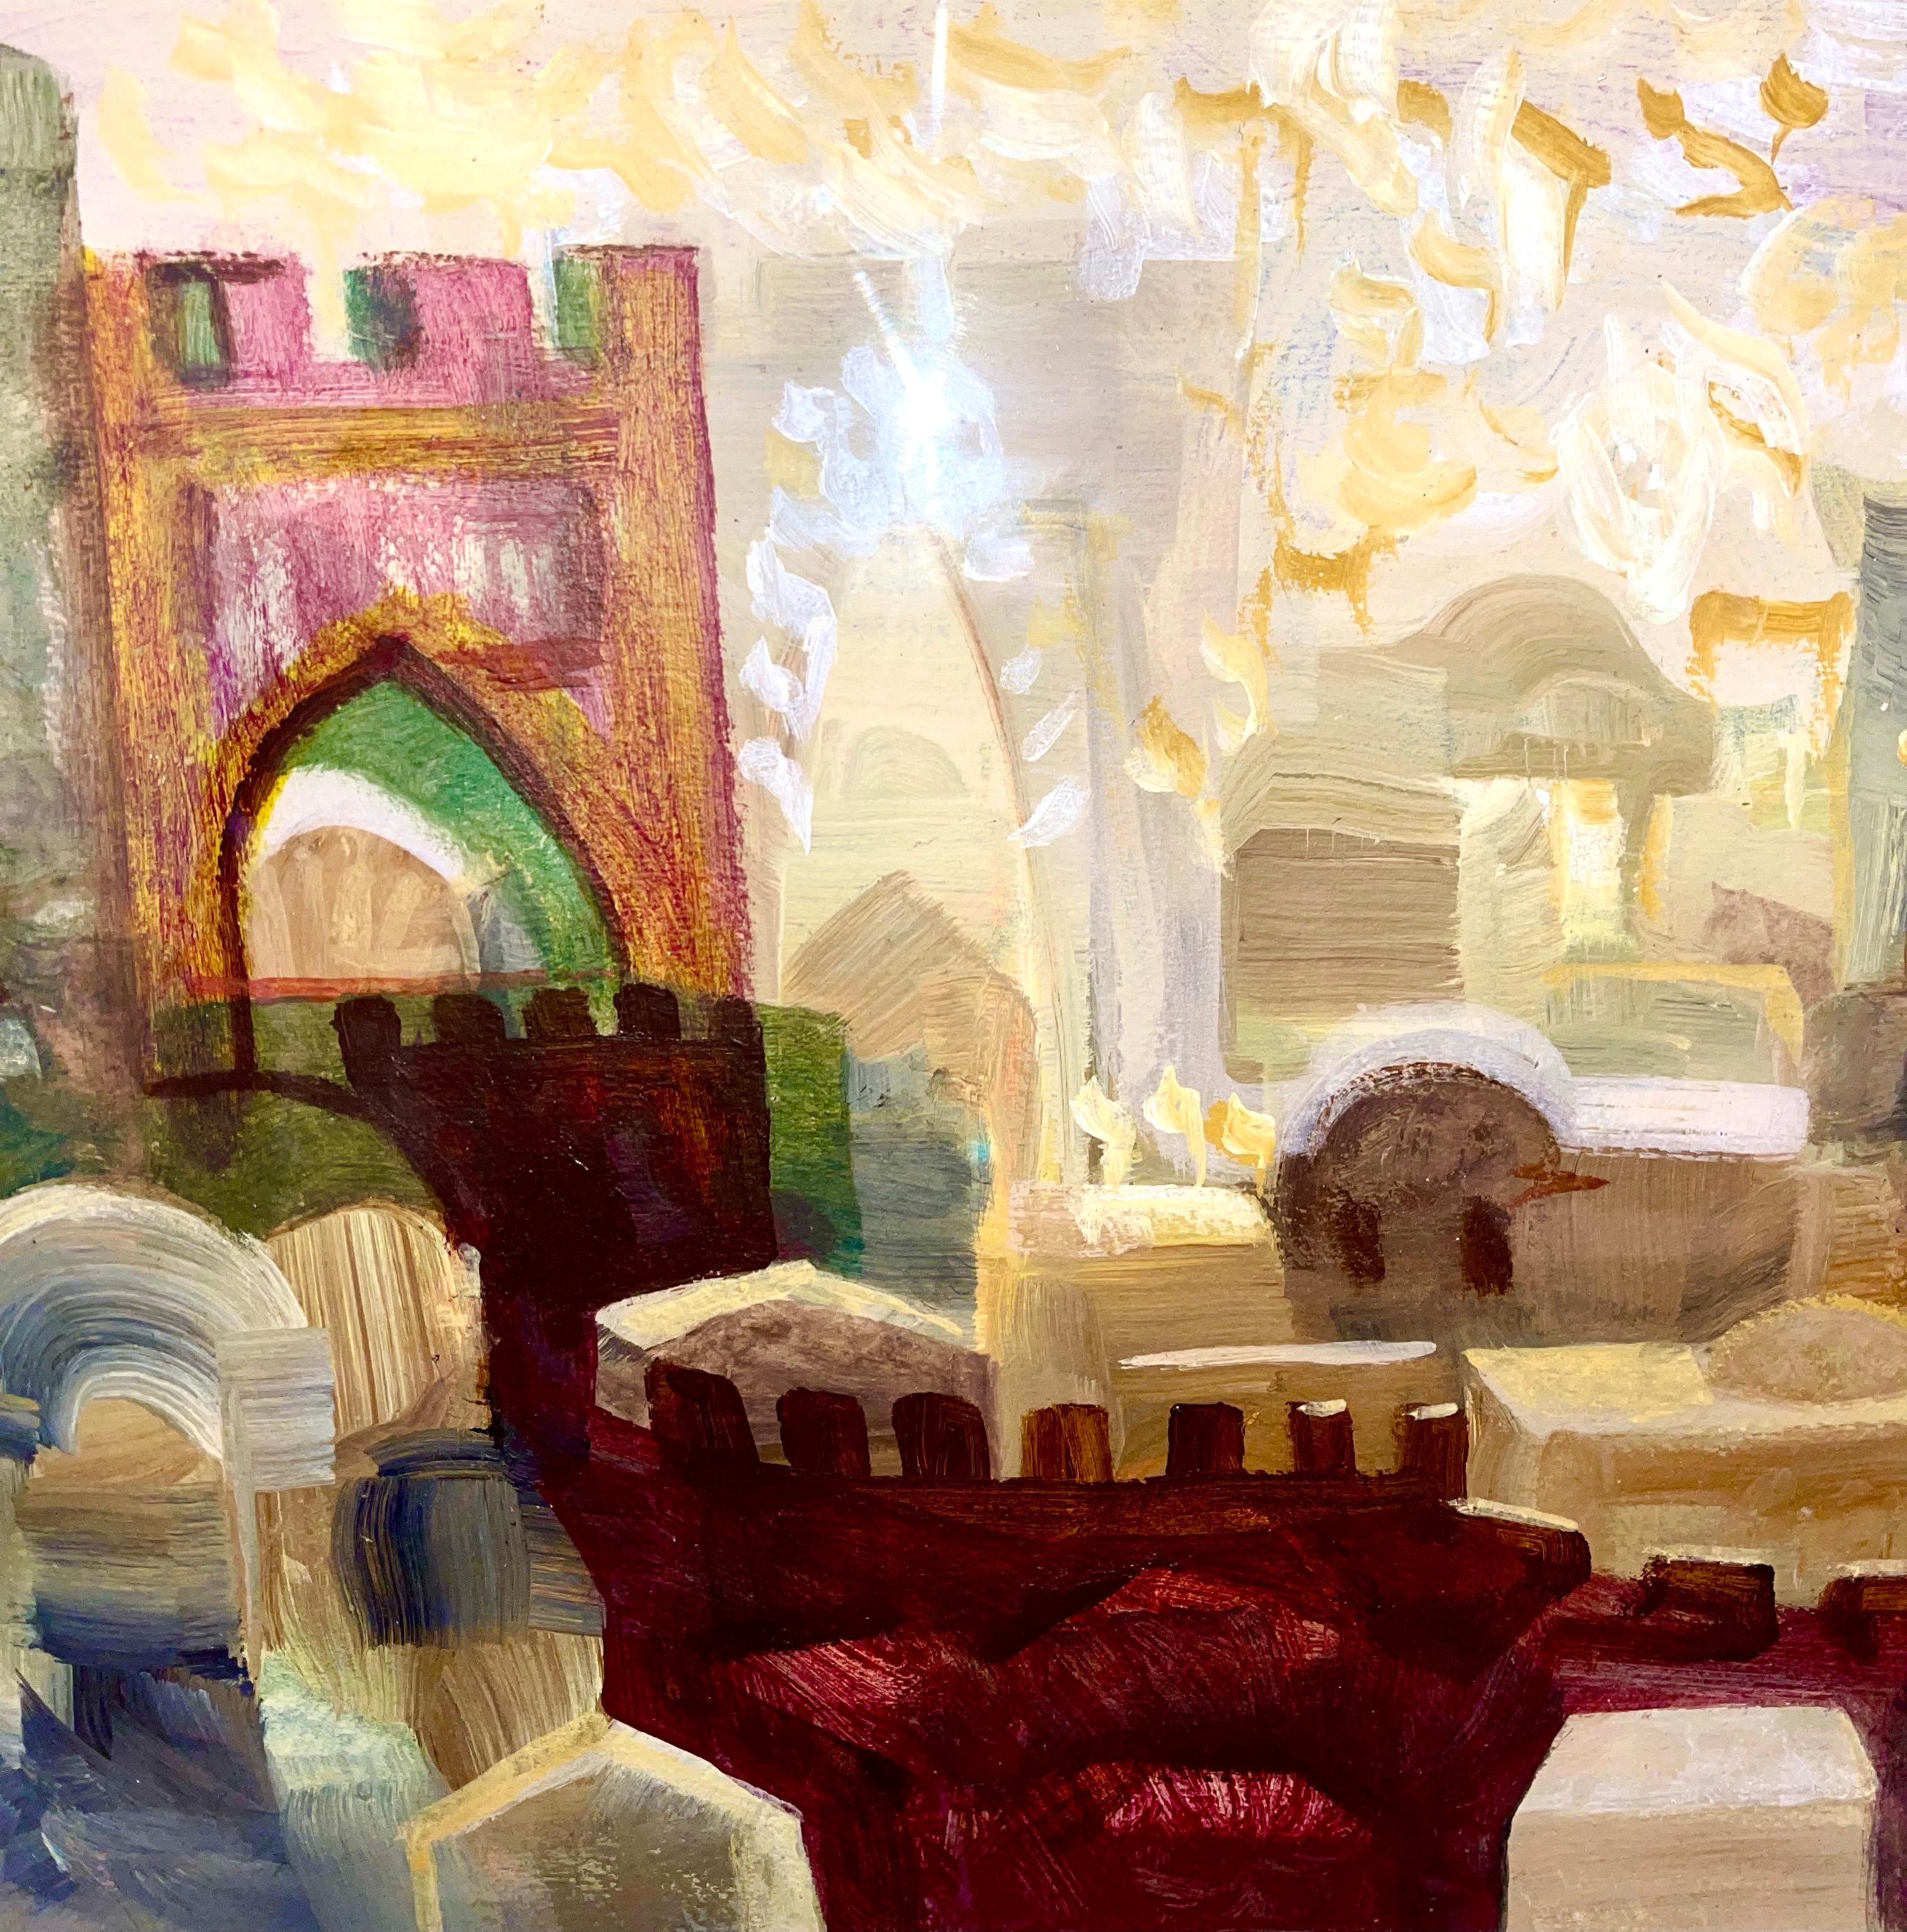 Peinture à l'huile juive mystique Kabbalah de Jérusalem paysage urbain lettres hébraïques judaïques - Surréalisme Painting par David Rakia